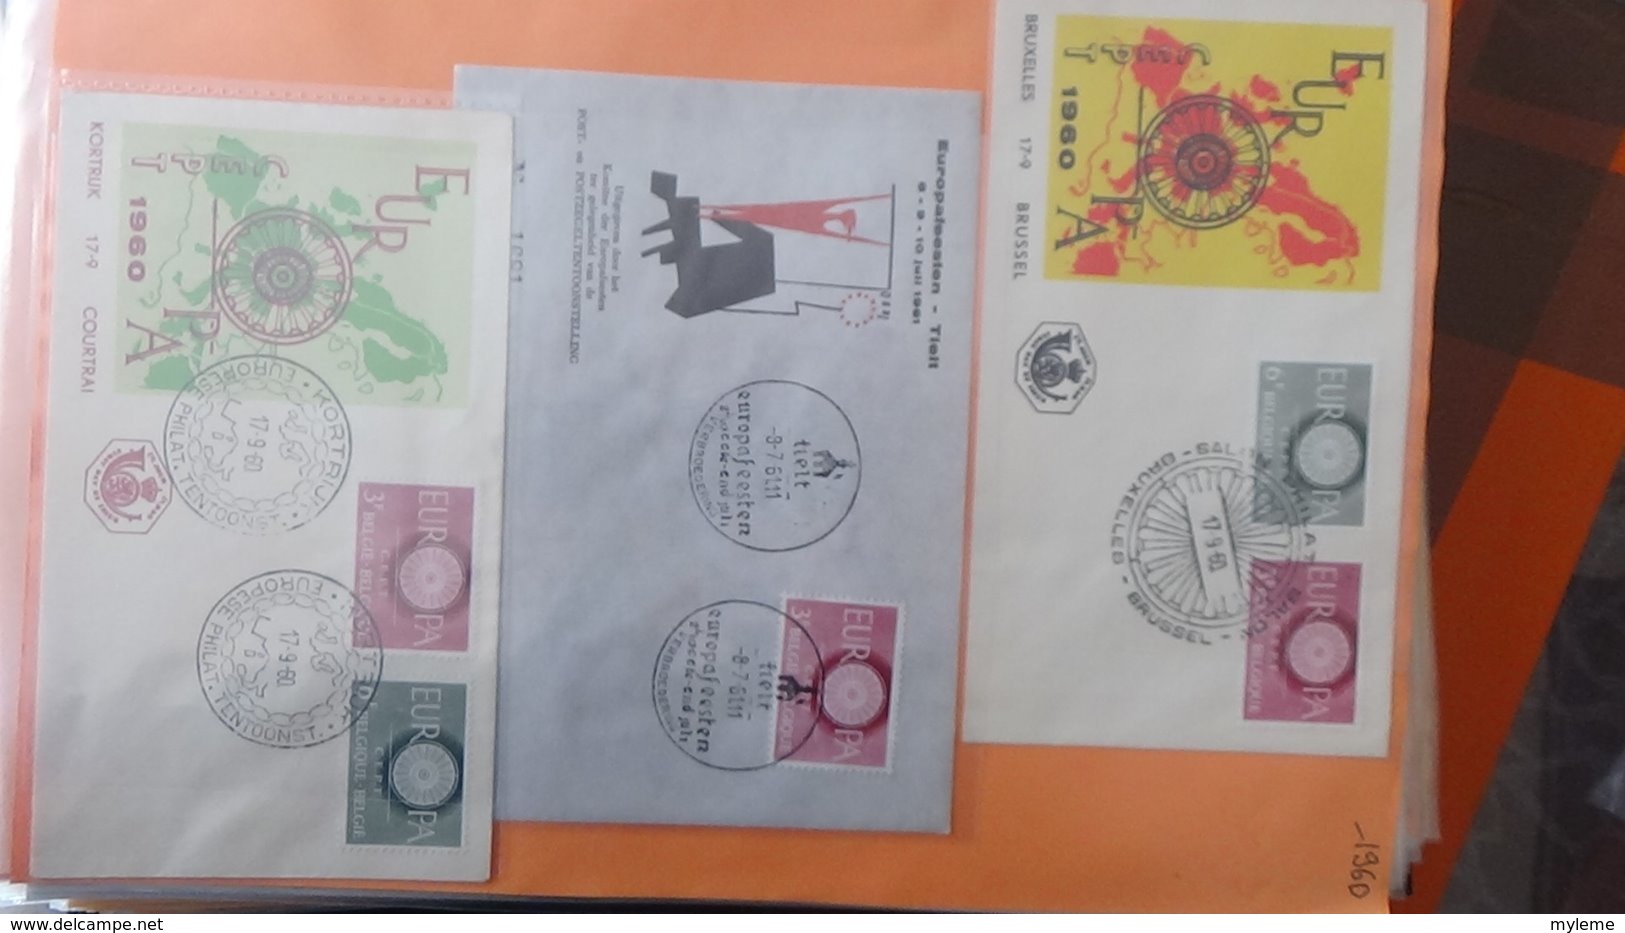 Dispersion d'une collection d'enveloppe 1er jour et autres dont 172 EUROPA (Madeire et Belgique)